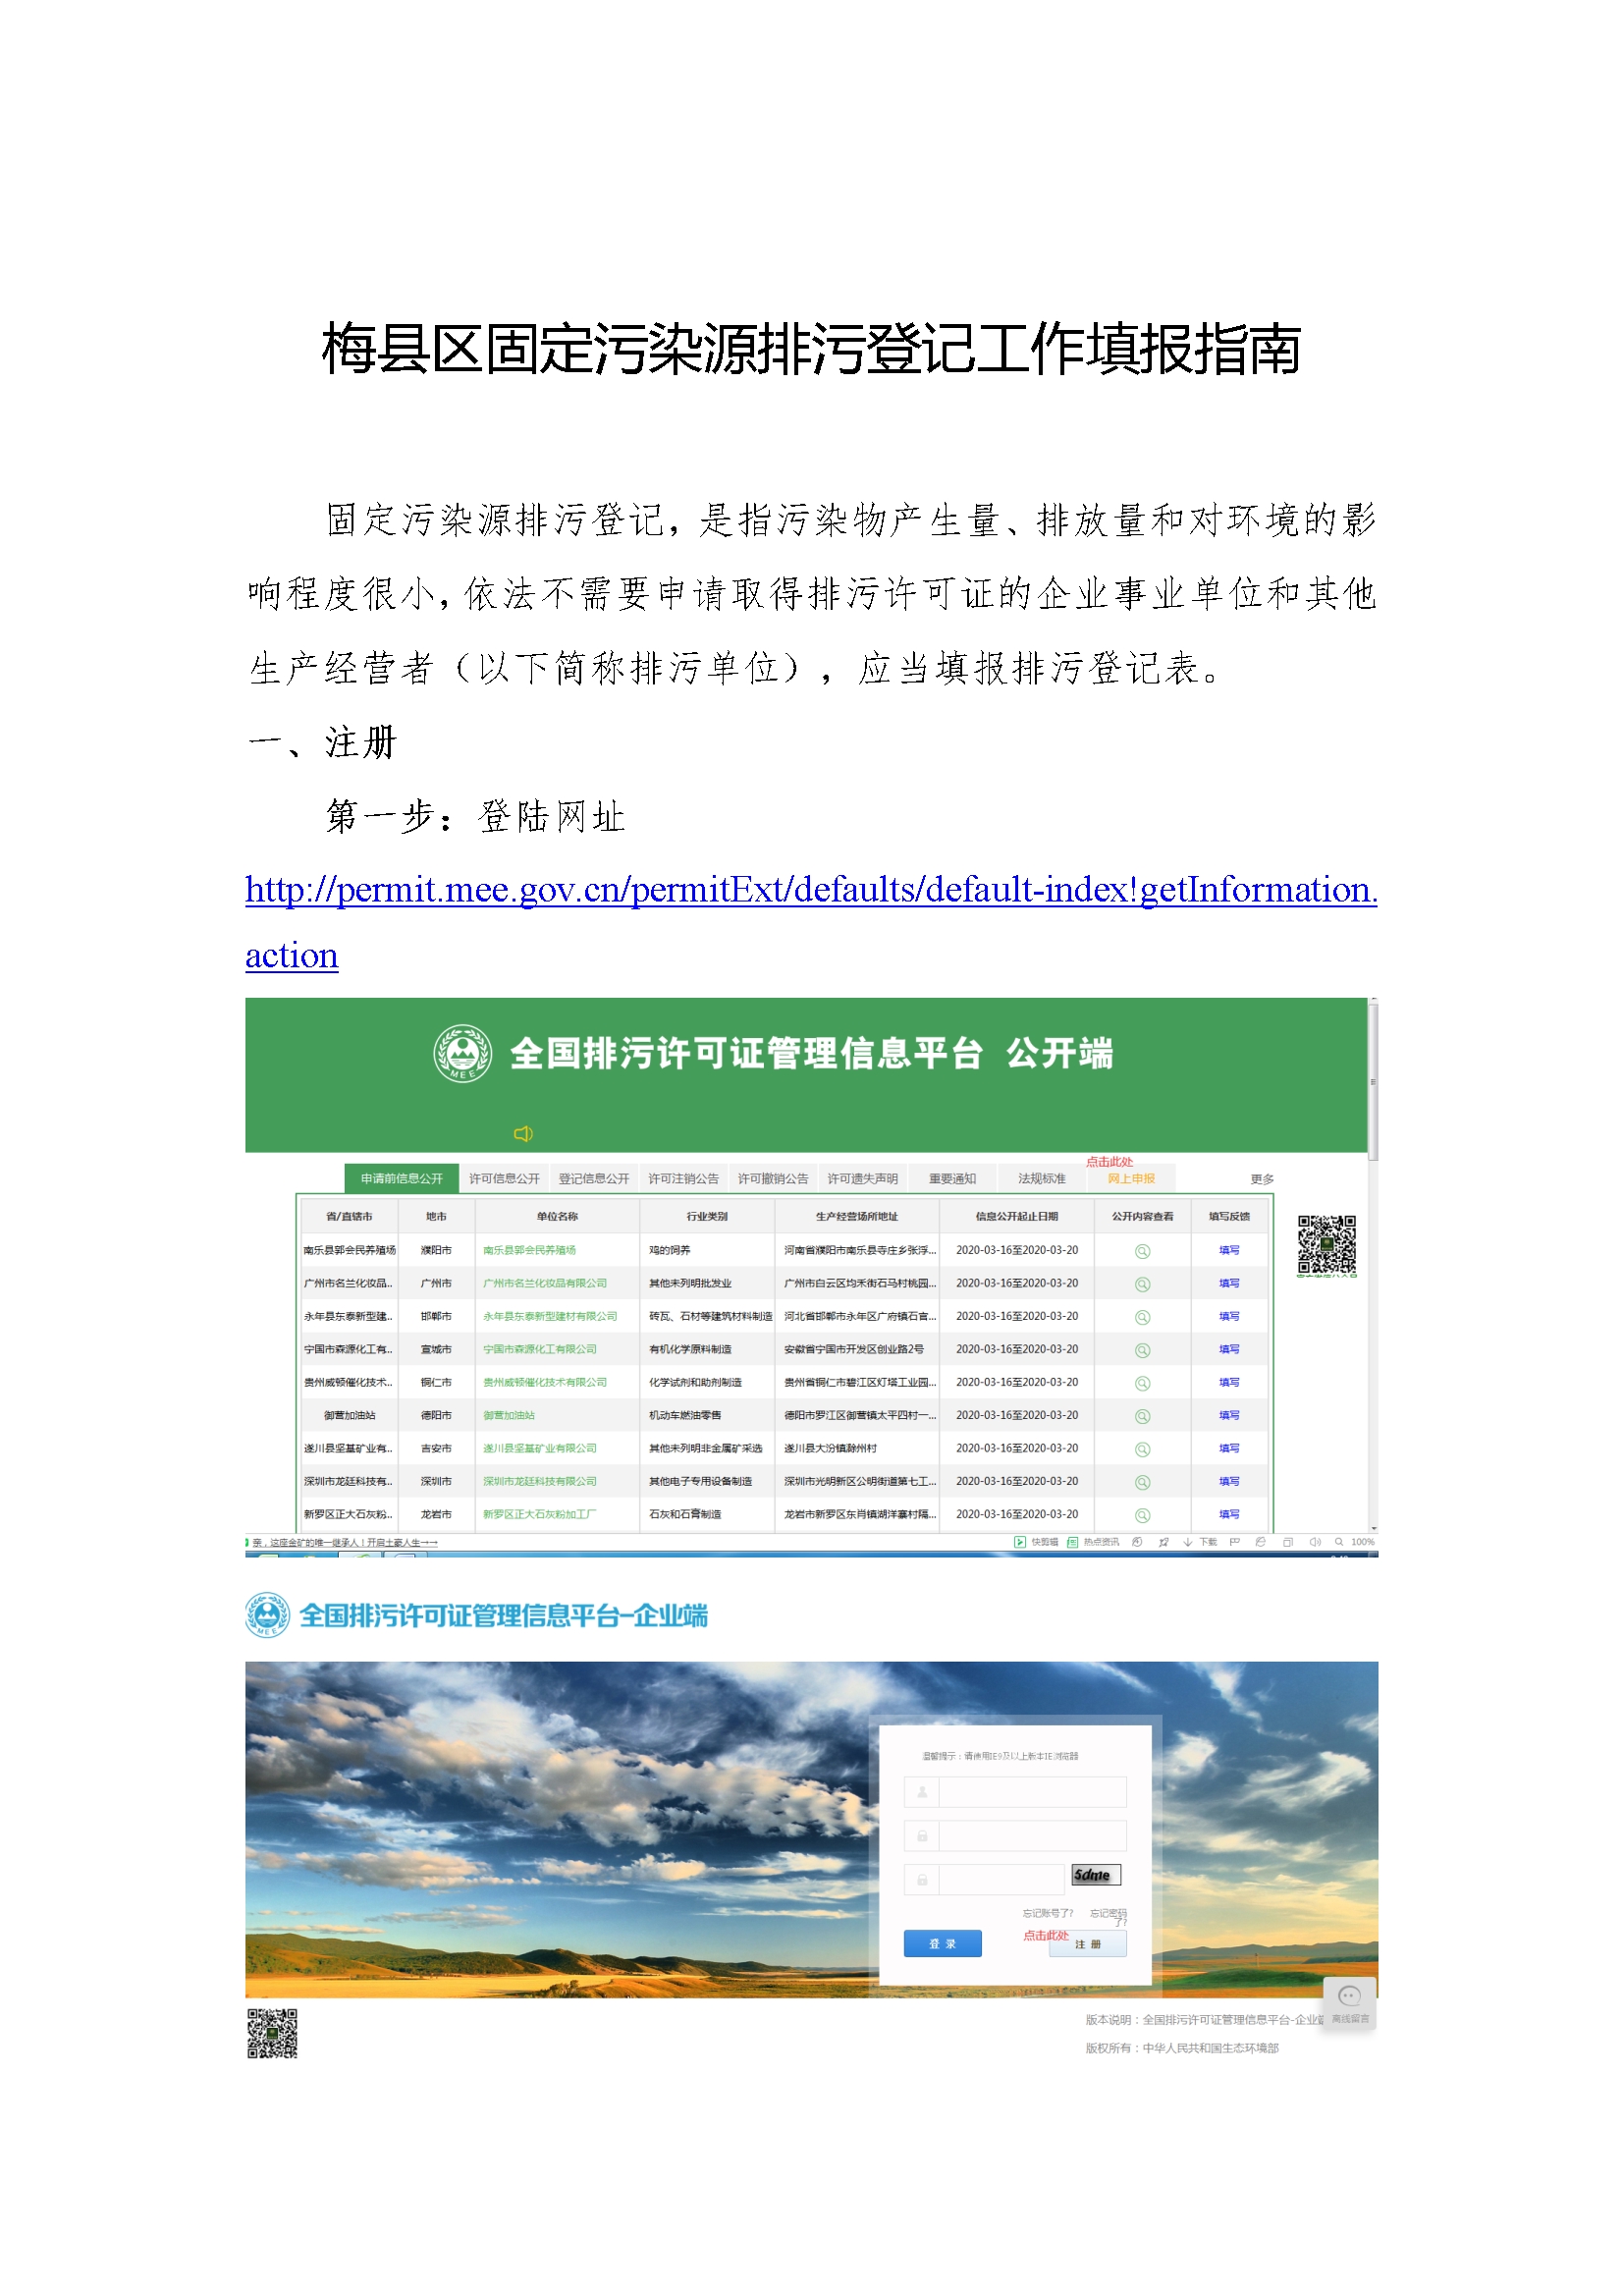 4梅县区固定污染源排污登记工作填报指南.jpg